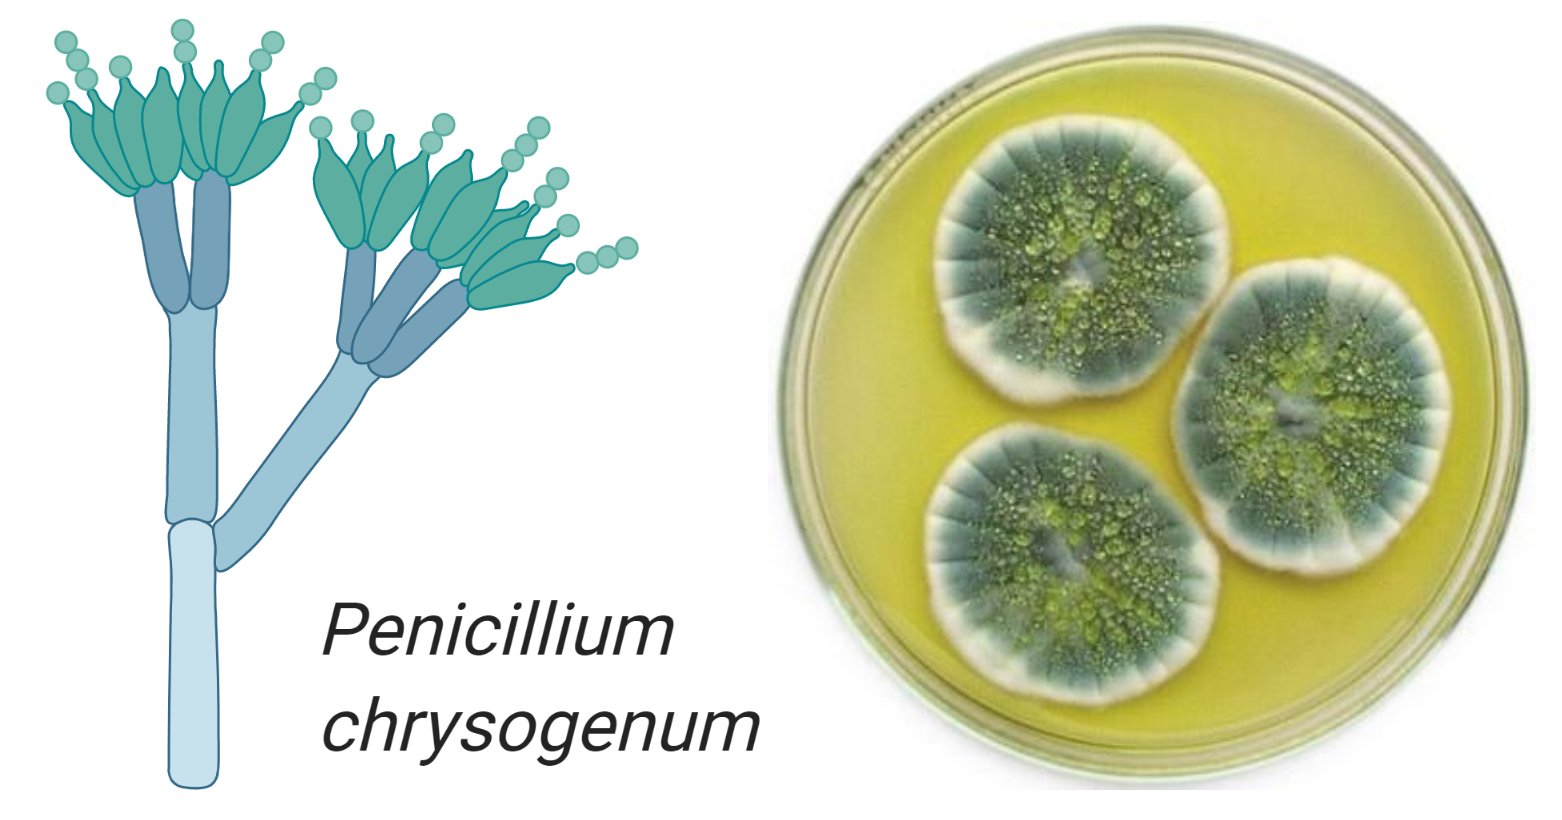 Плесень флеминга. Penicillium notatum пенициллин. Penicillium chrysogenum конидиеносцы. Пенициллиум хризогенум. Пеницилл золотистый.